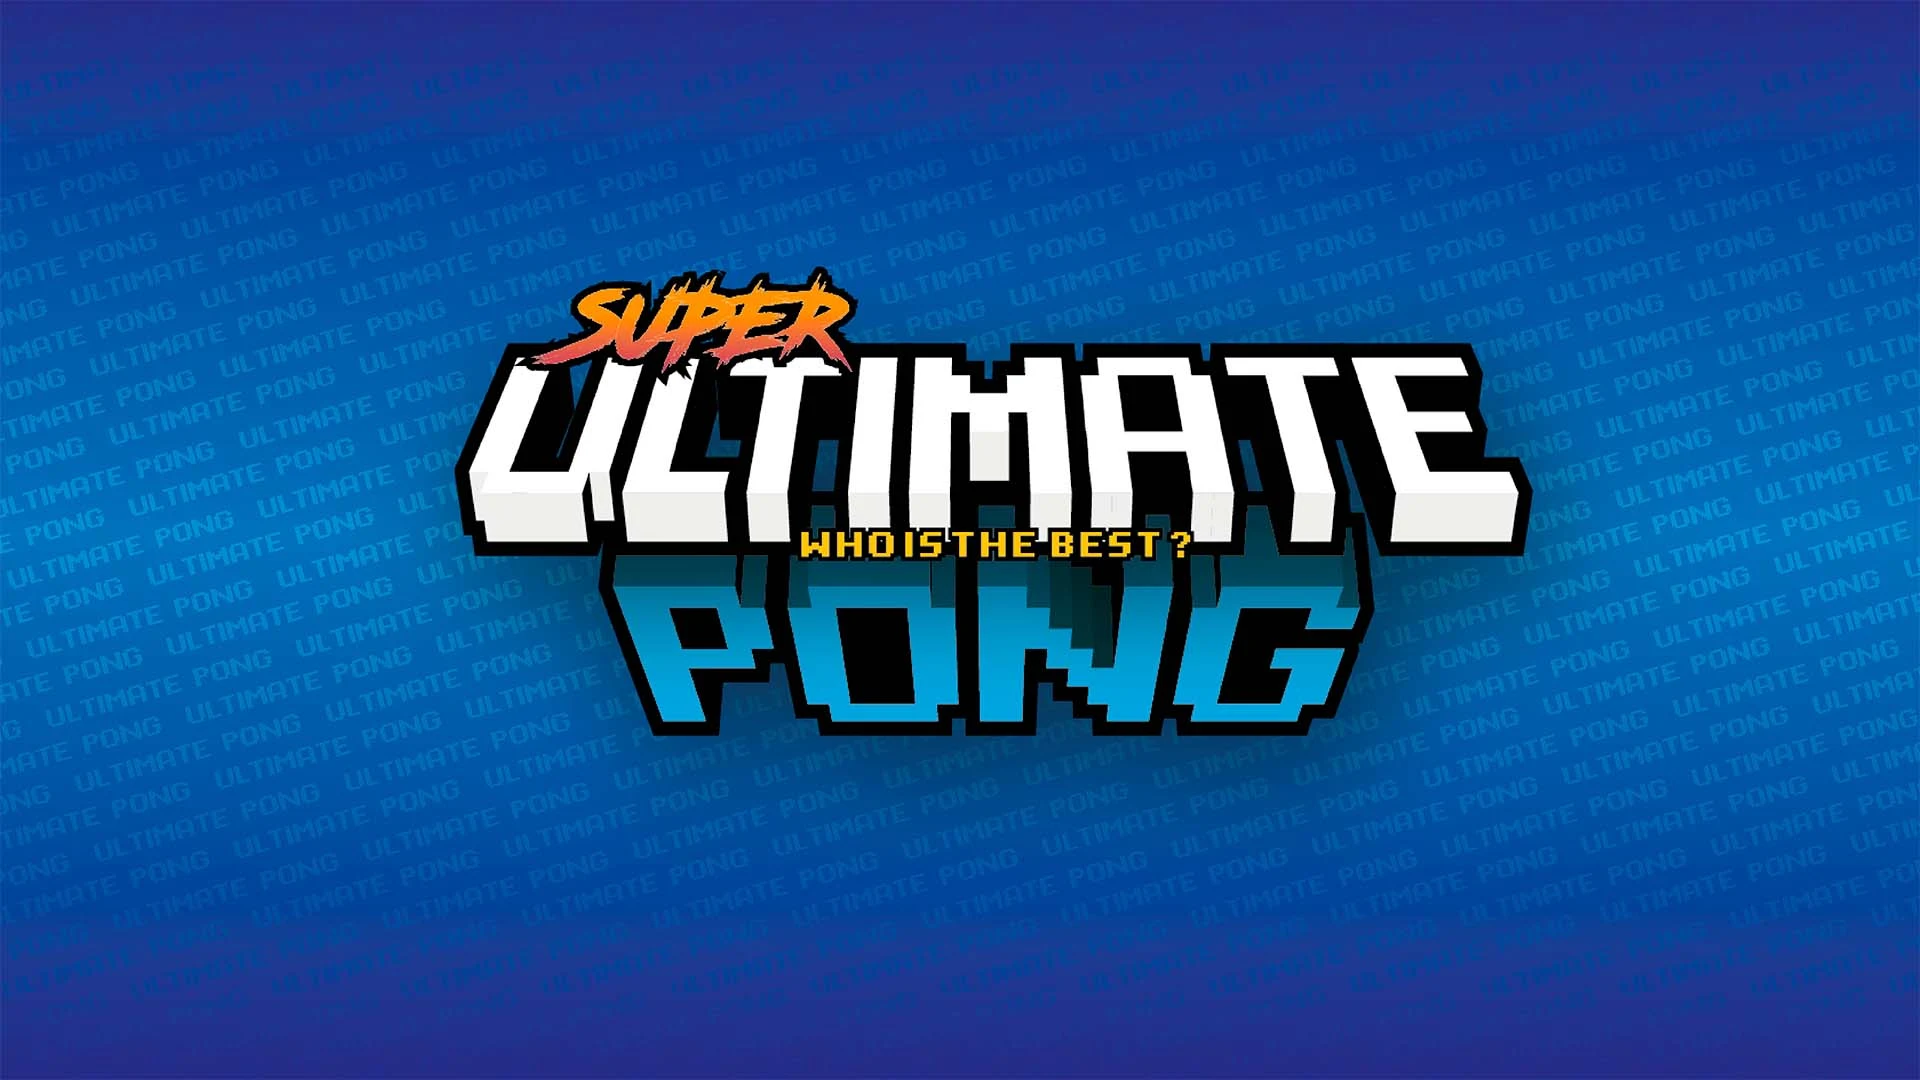 Super Ultimate Pong